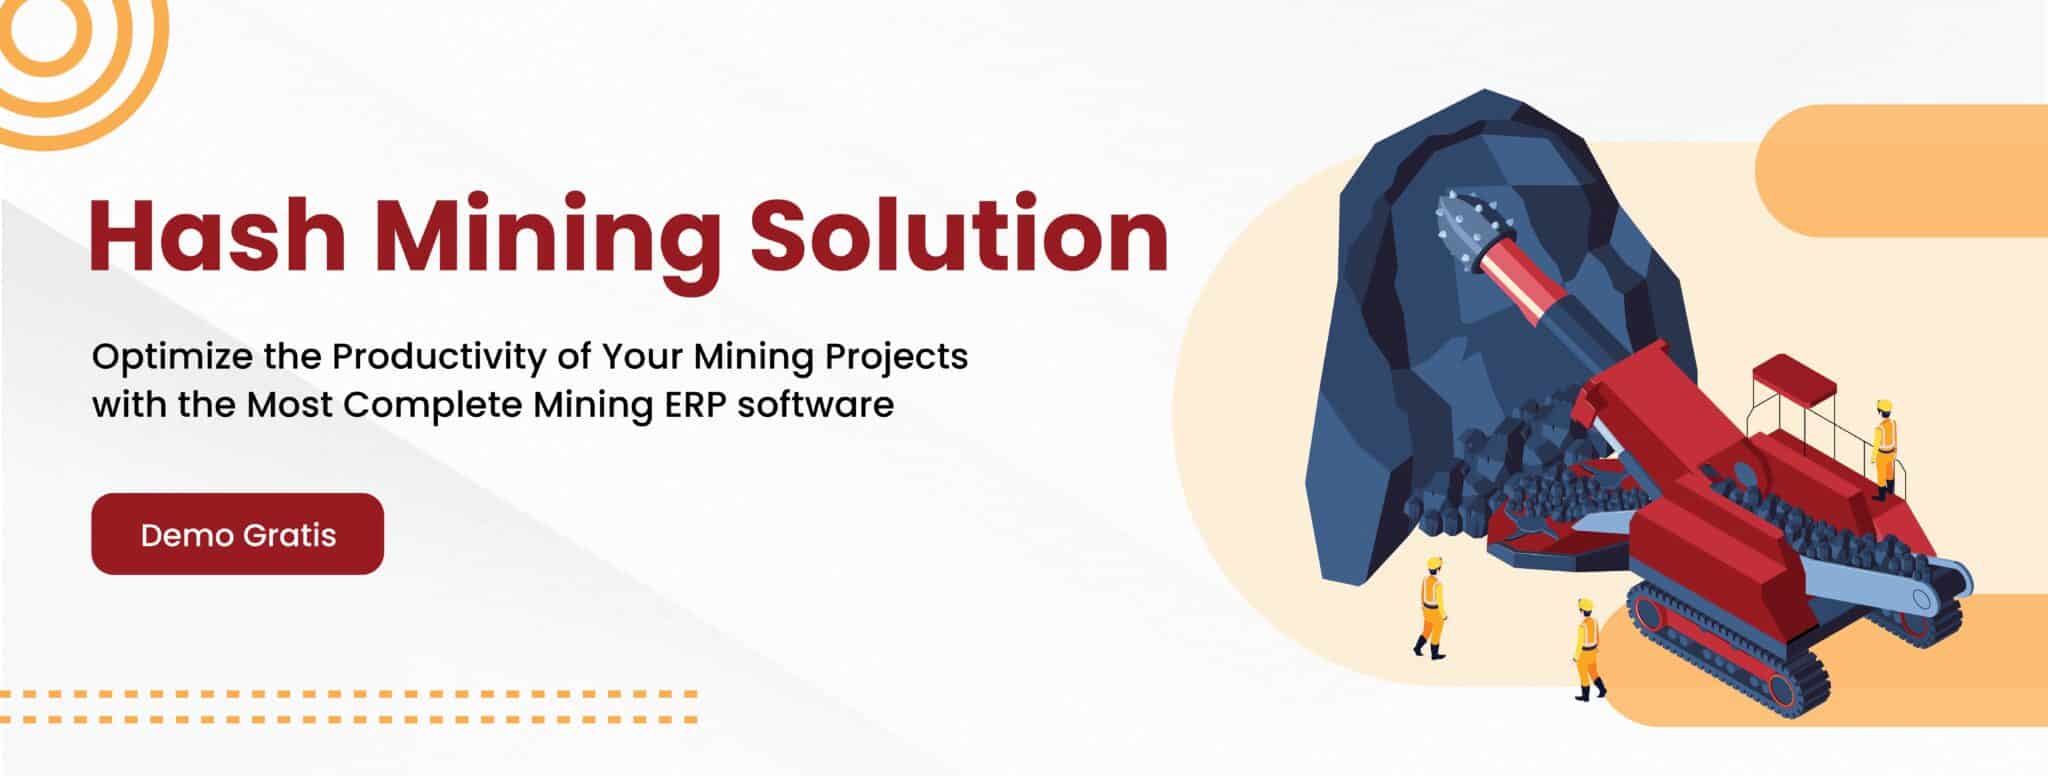 cta mining solution